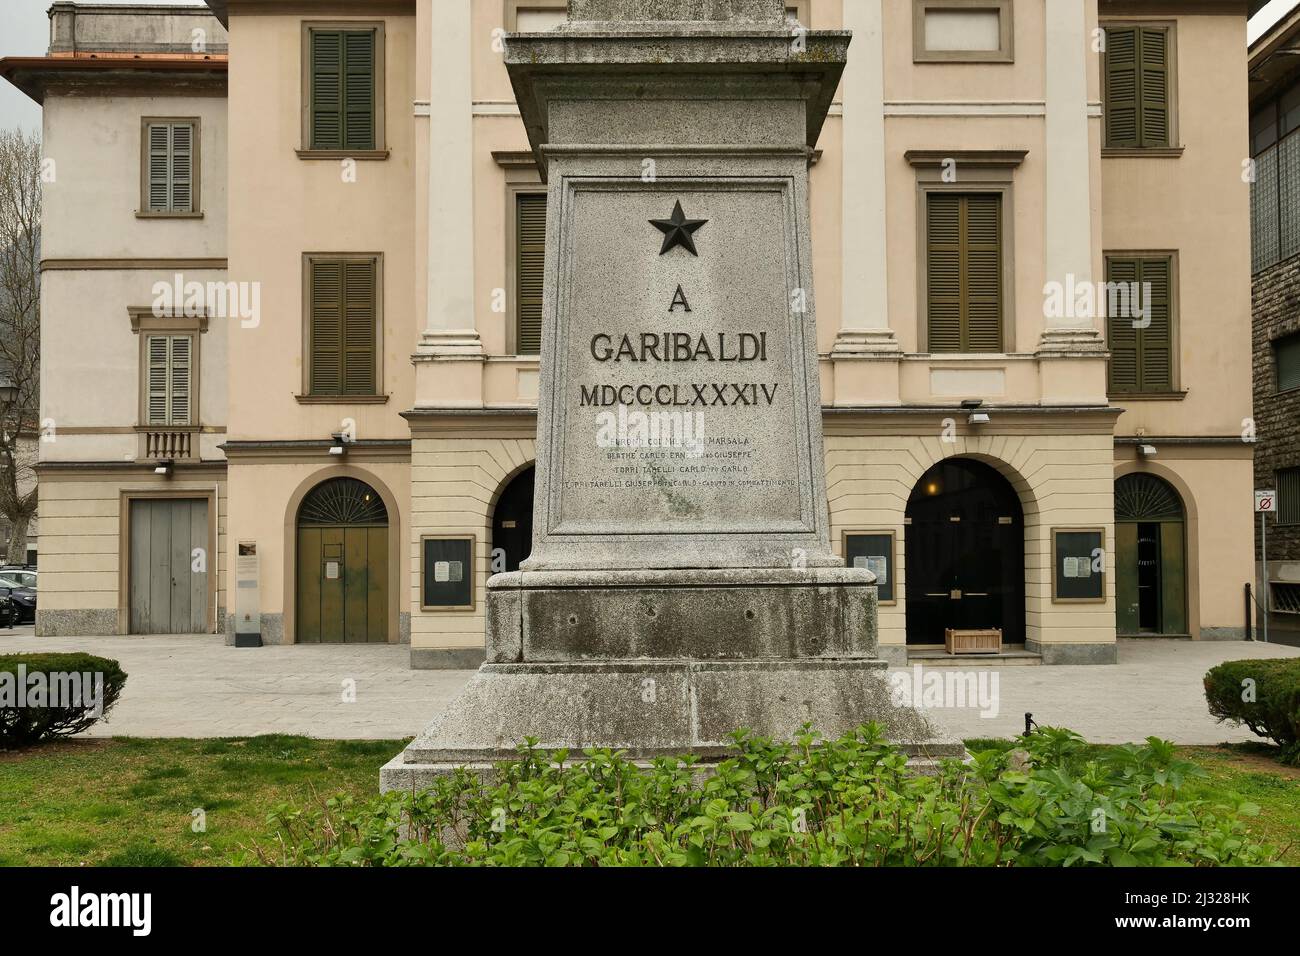 Giuseppe Garibaldi monument in Mazzini square, Lecco, Lombardy, Italy Stock Photo